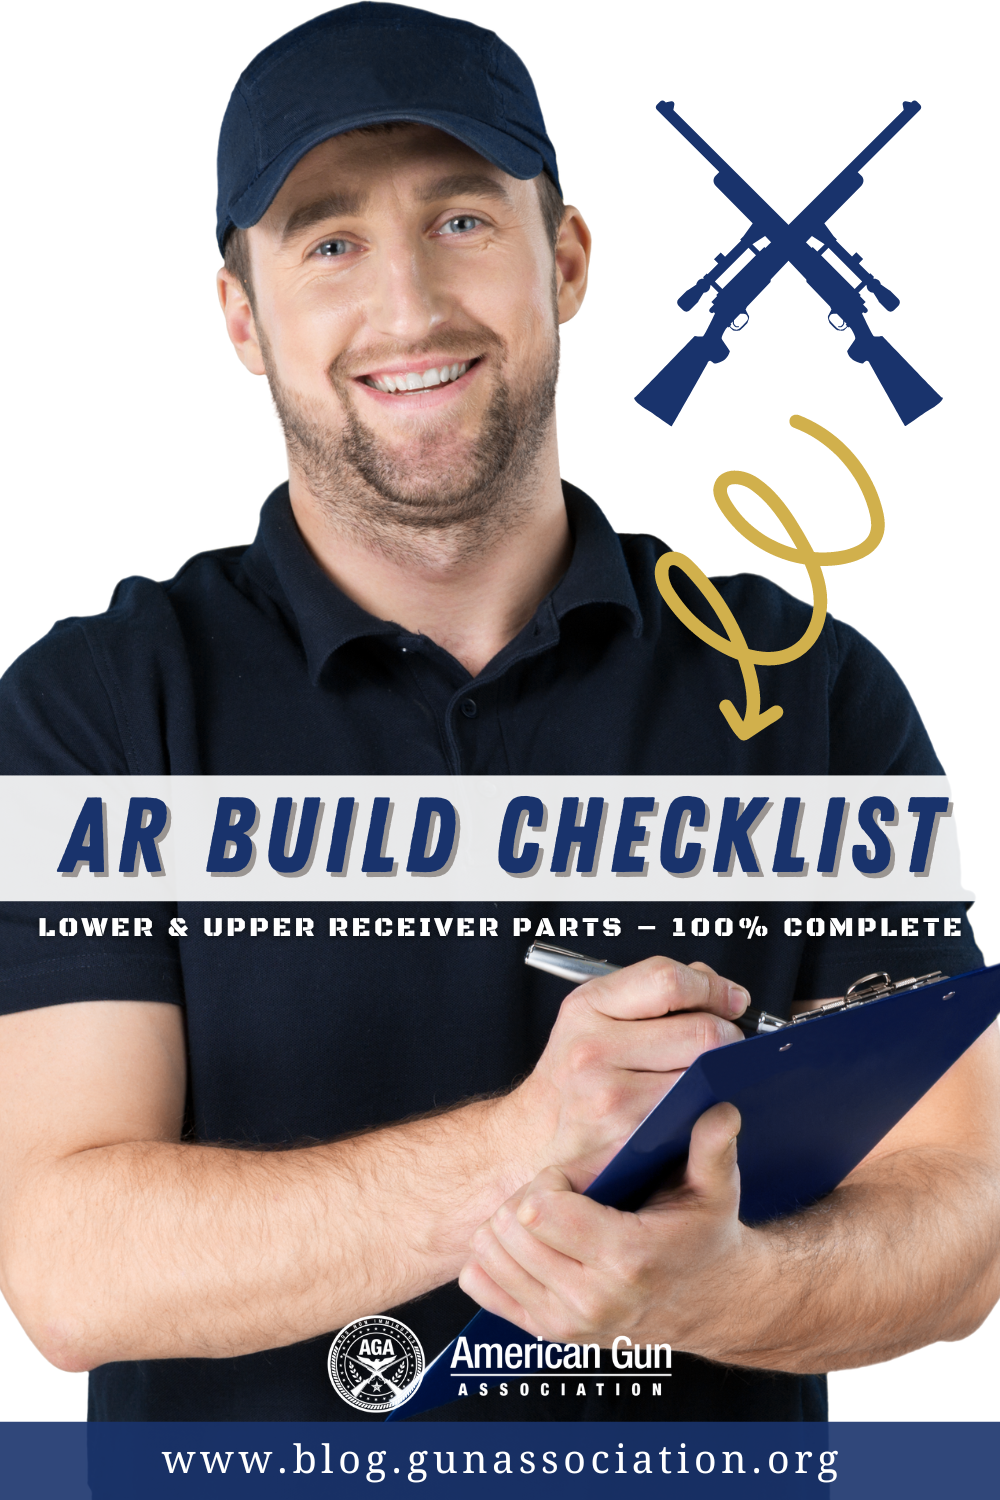 AR build checklist - AGA